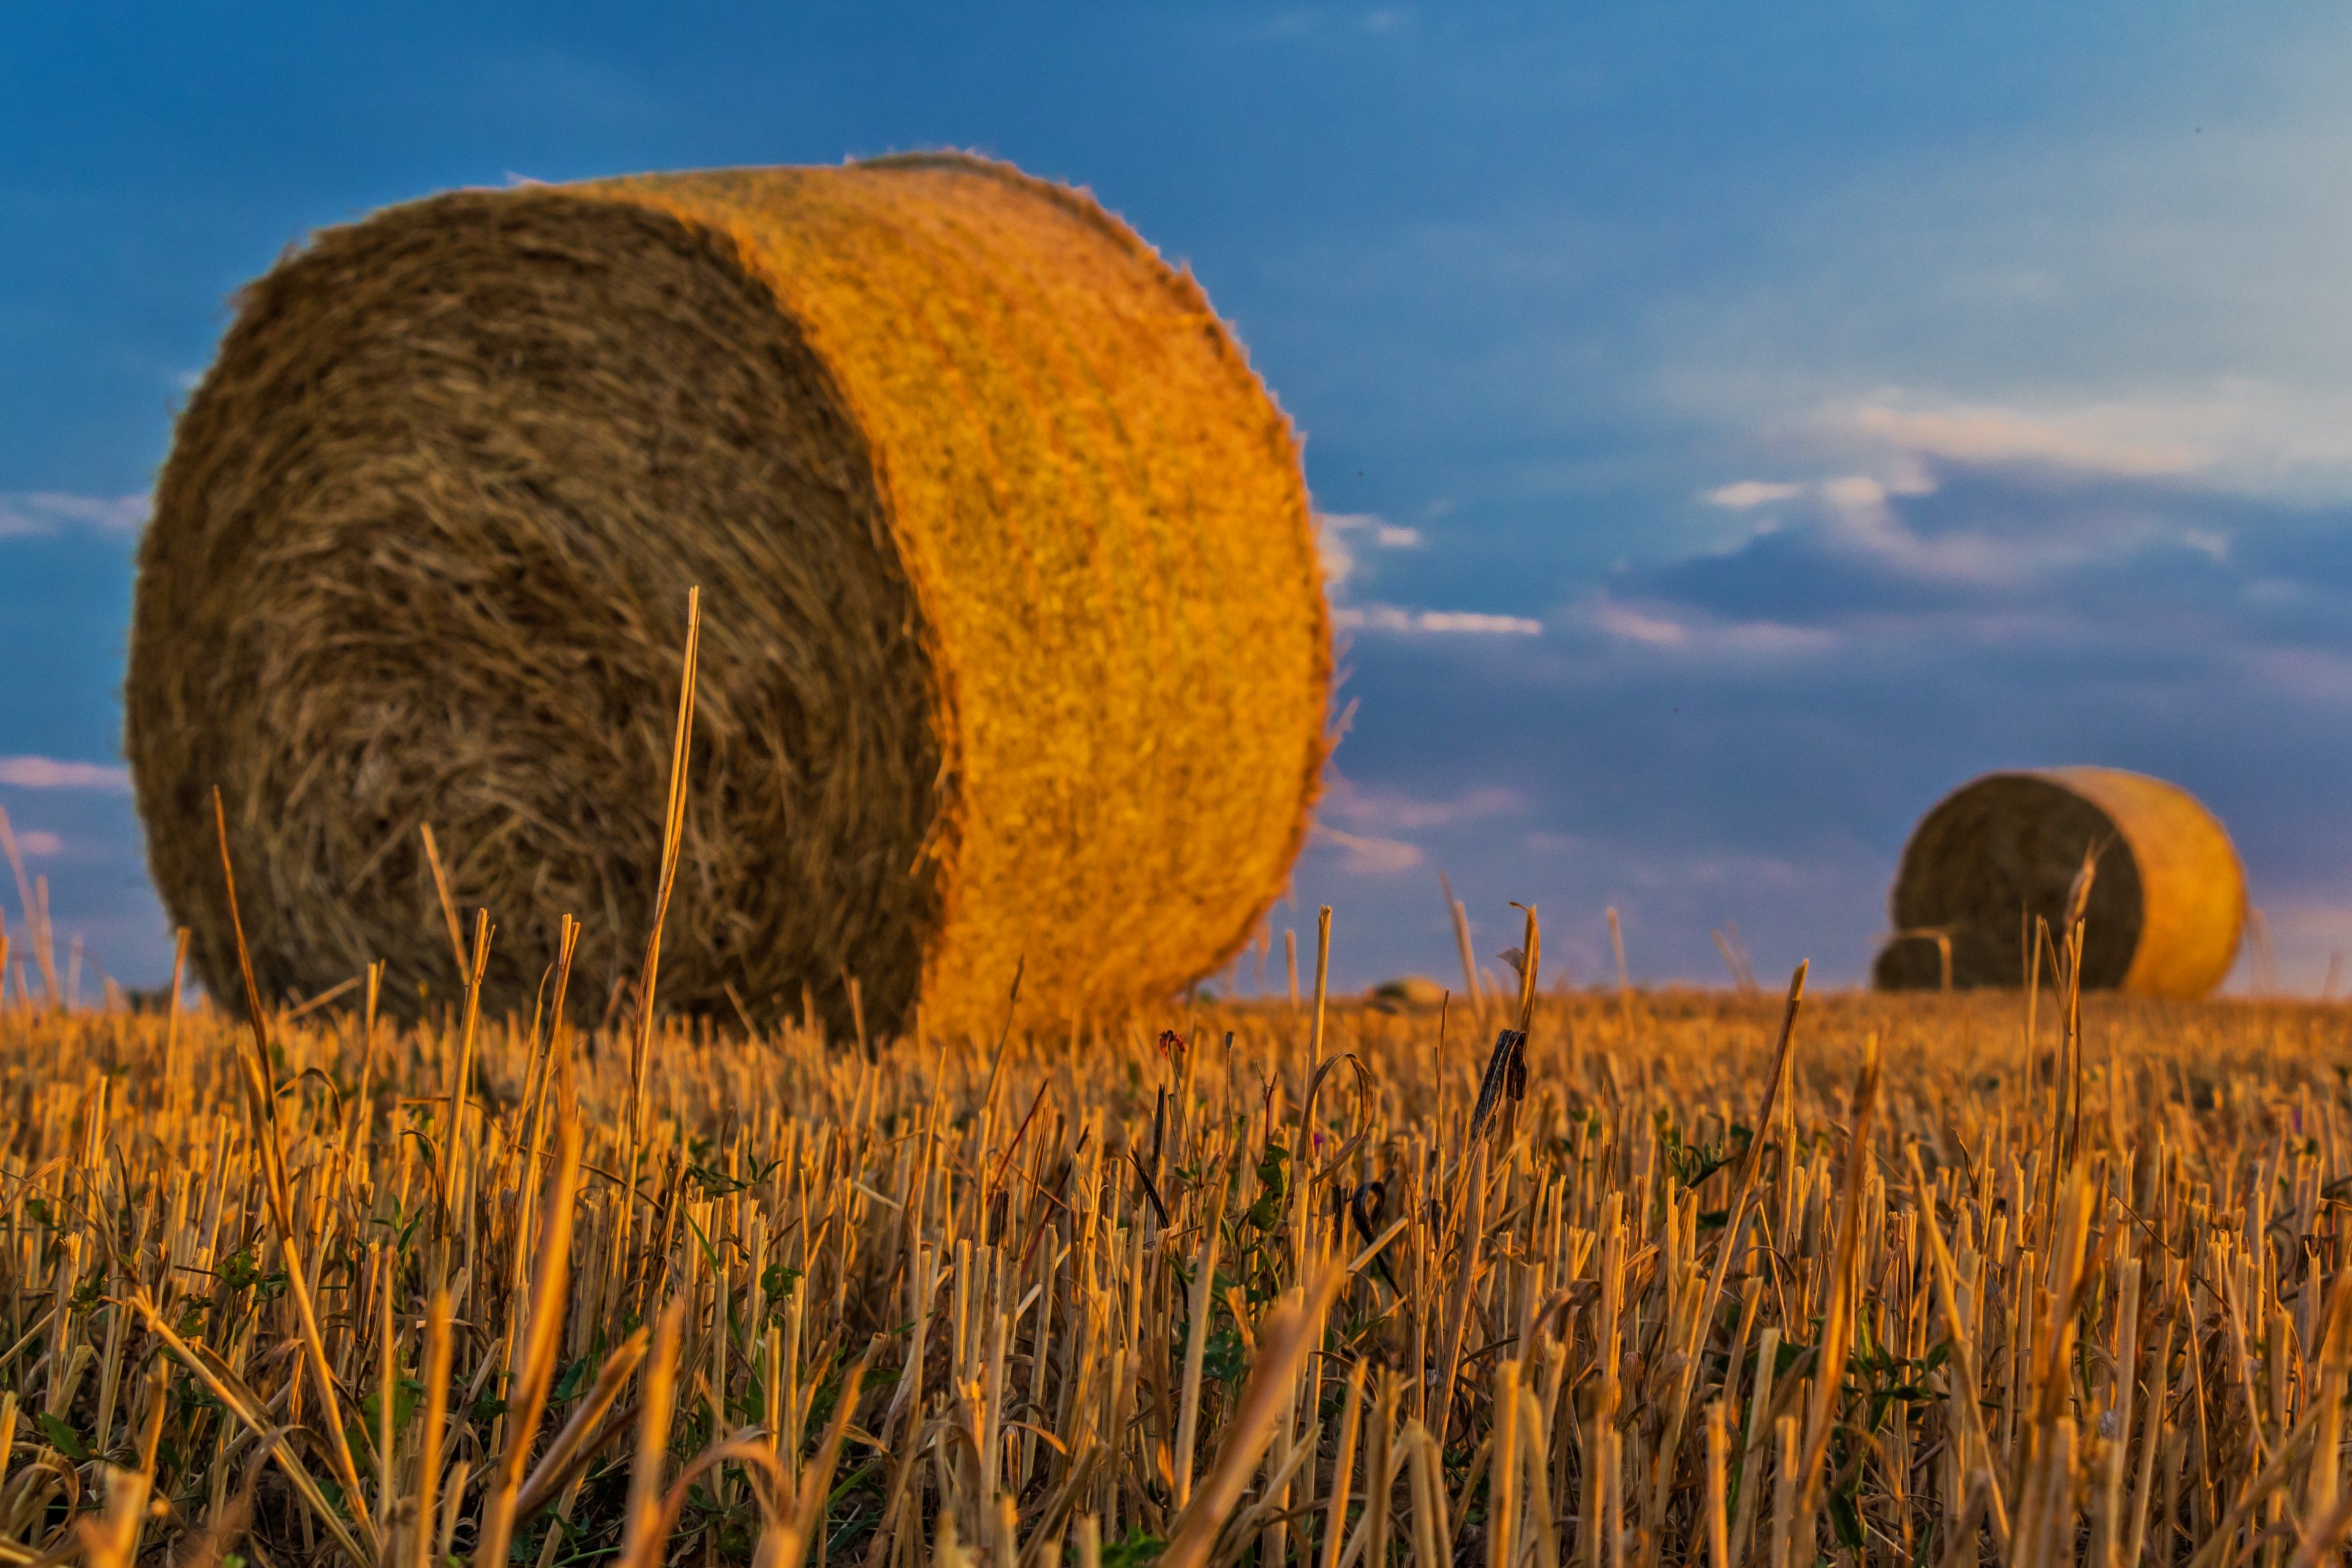 bale #straw #agriculture #harvest #rural landscape 4k wallpaper